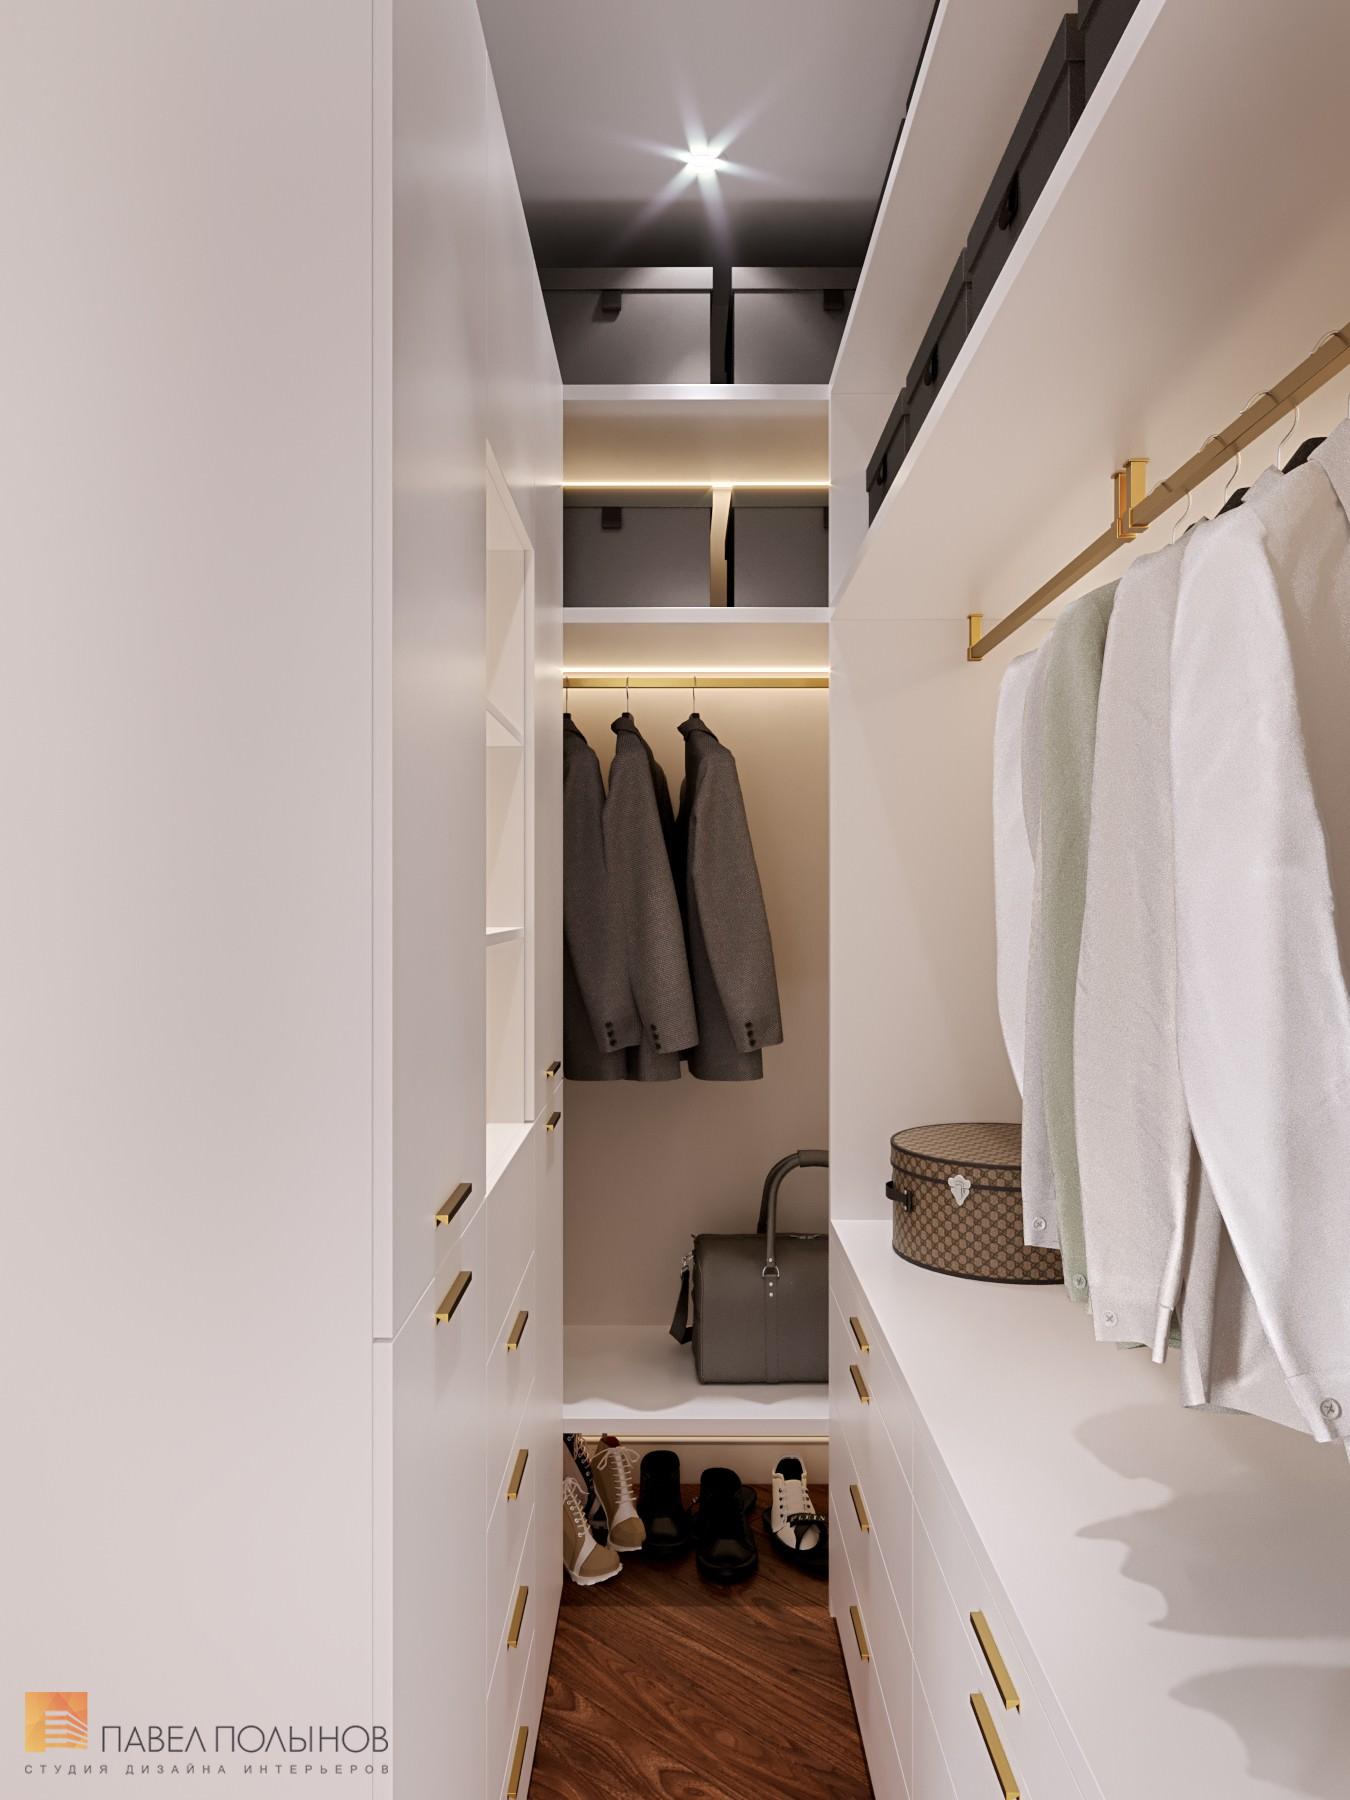 Фото гардеробная из проекта «Интерьер квартиры в классическом стиле с элементами ар-деко, ЖК «Жемчужный берег», 128 кв.м.»